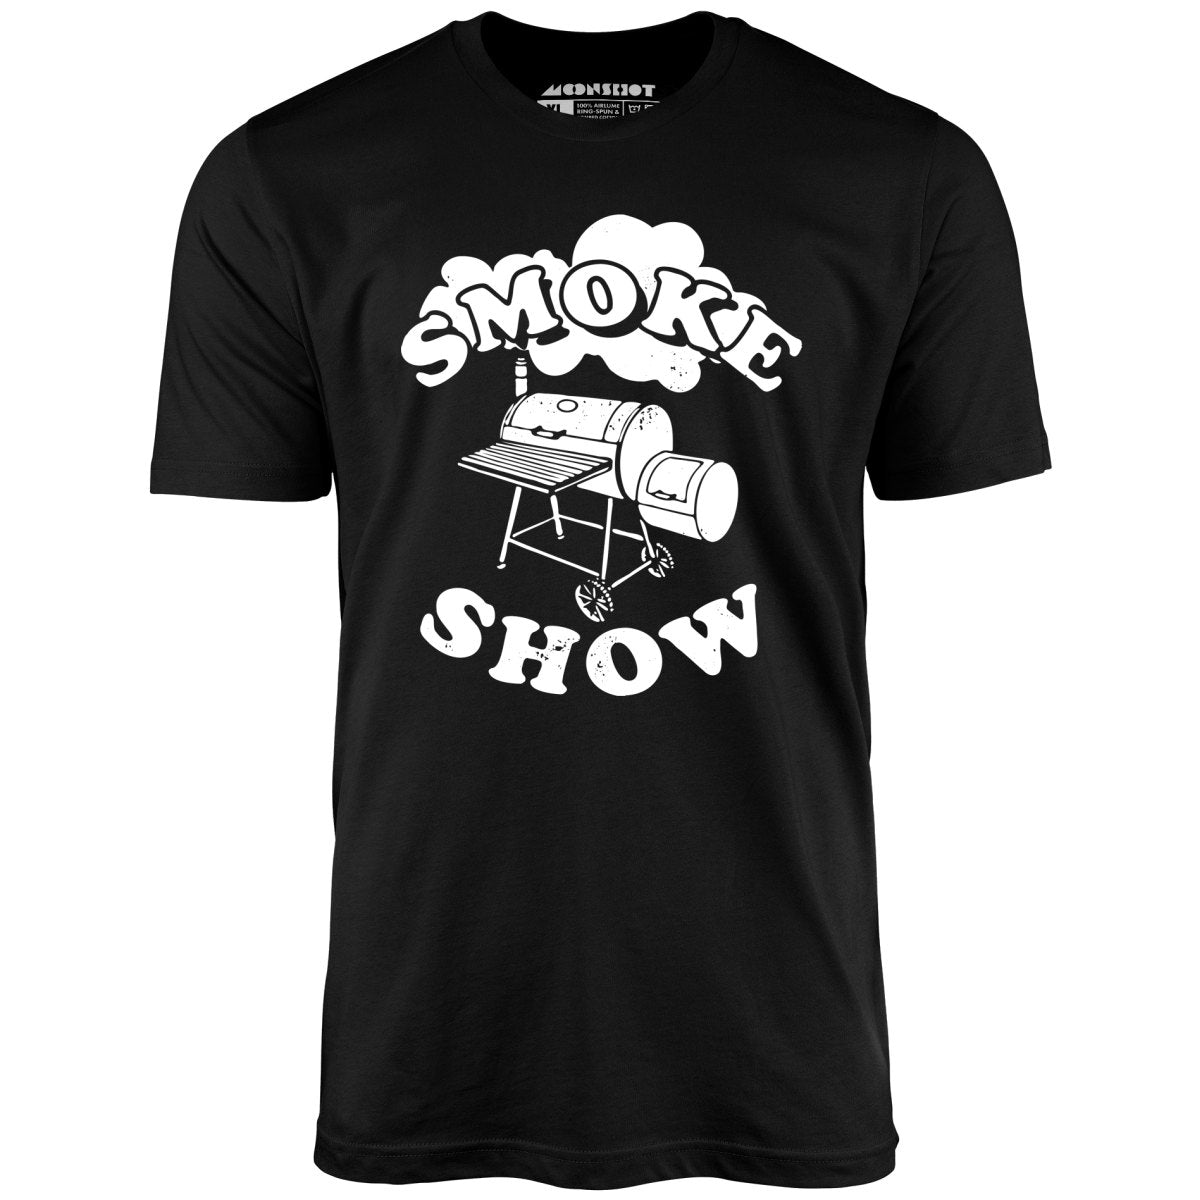 Smoke Show - Unisex T-Shirt